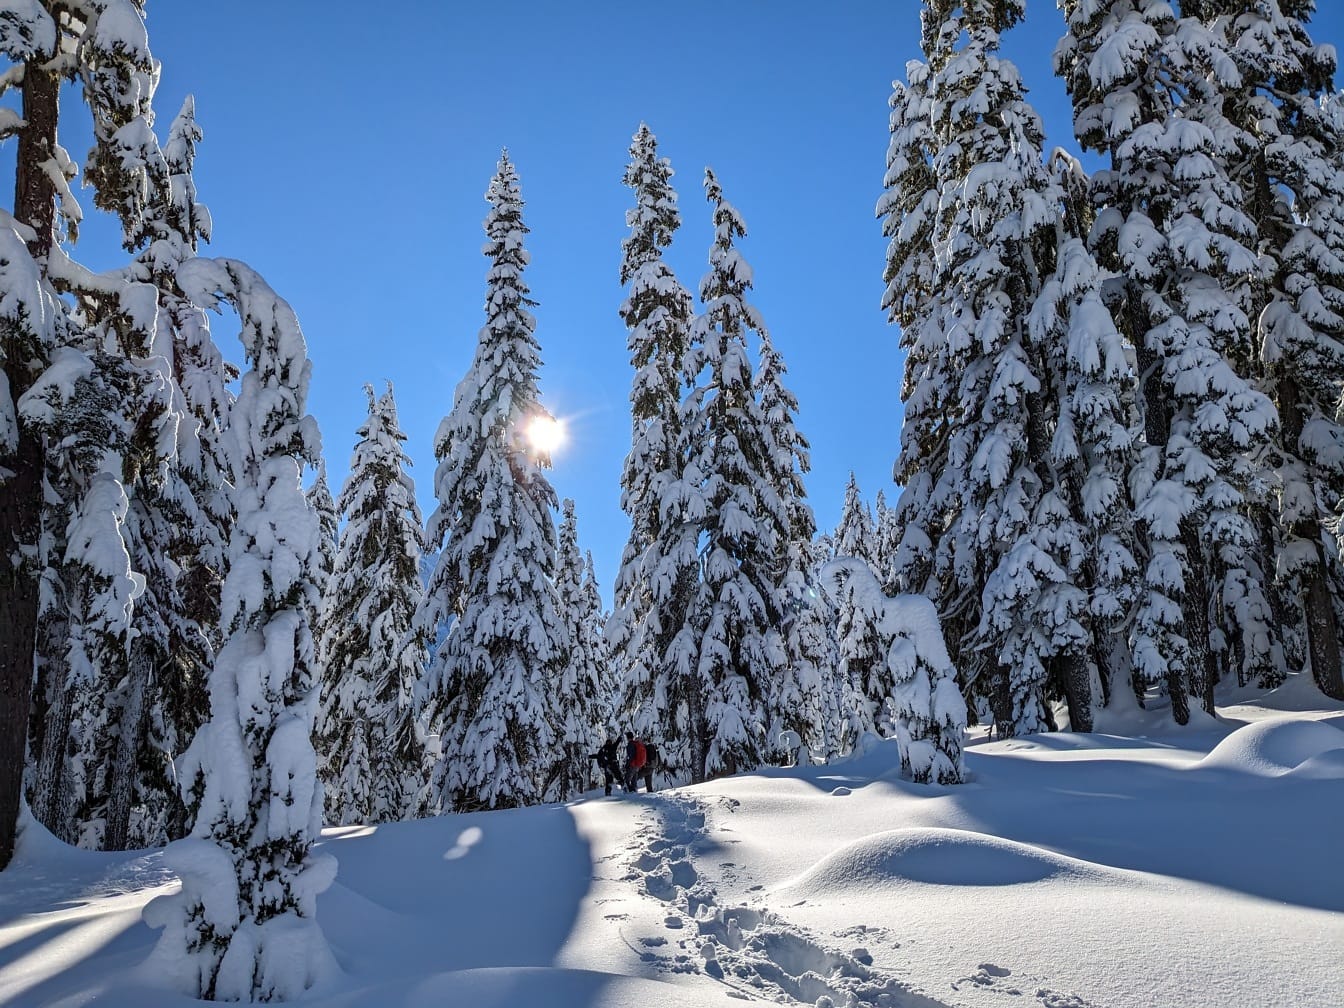 Beberapa pendaki gunung berjalan melalui salju tebal di hutan bersalju